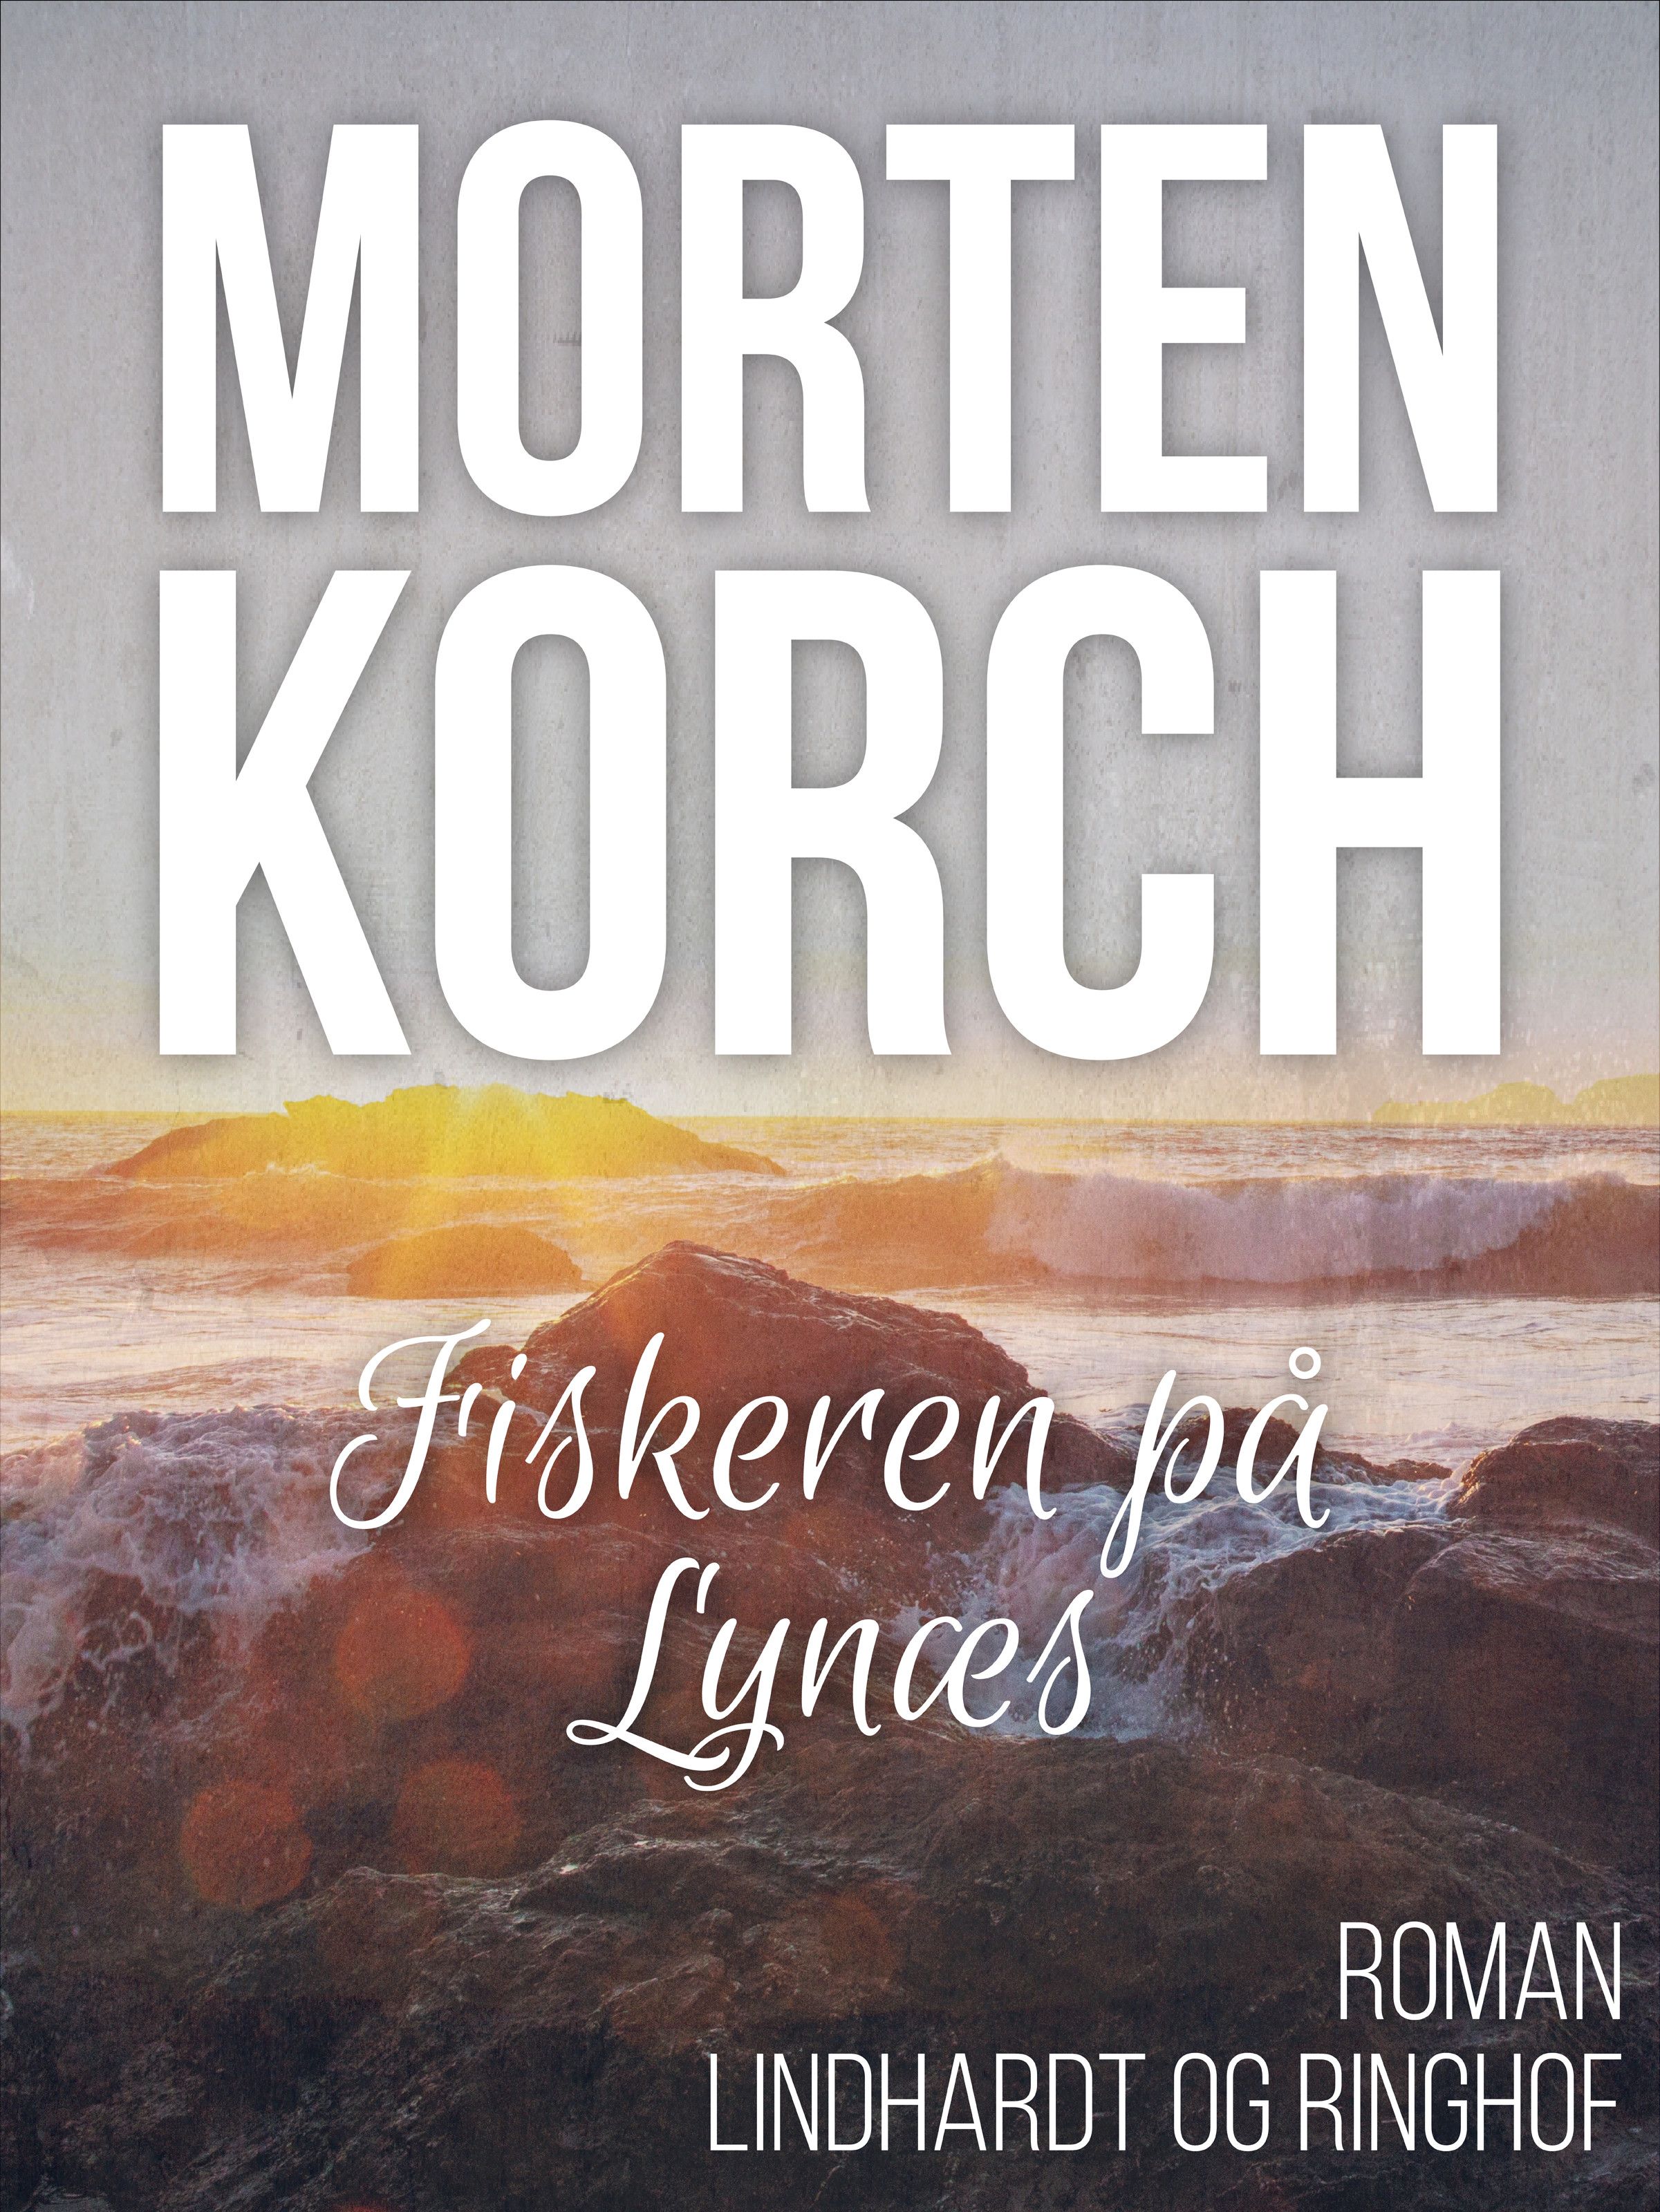 Fiskeren på Lynæs, ljudbok av Morten Korch